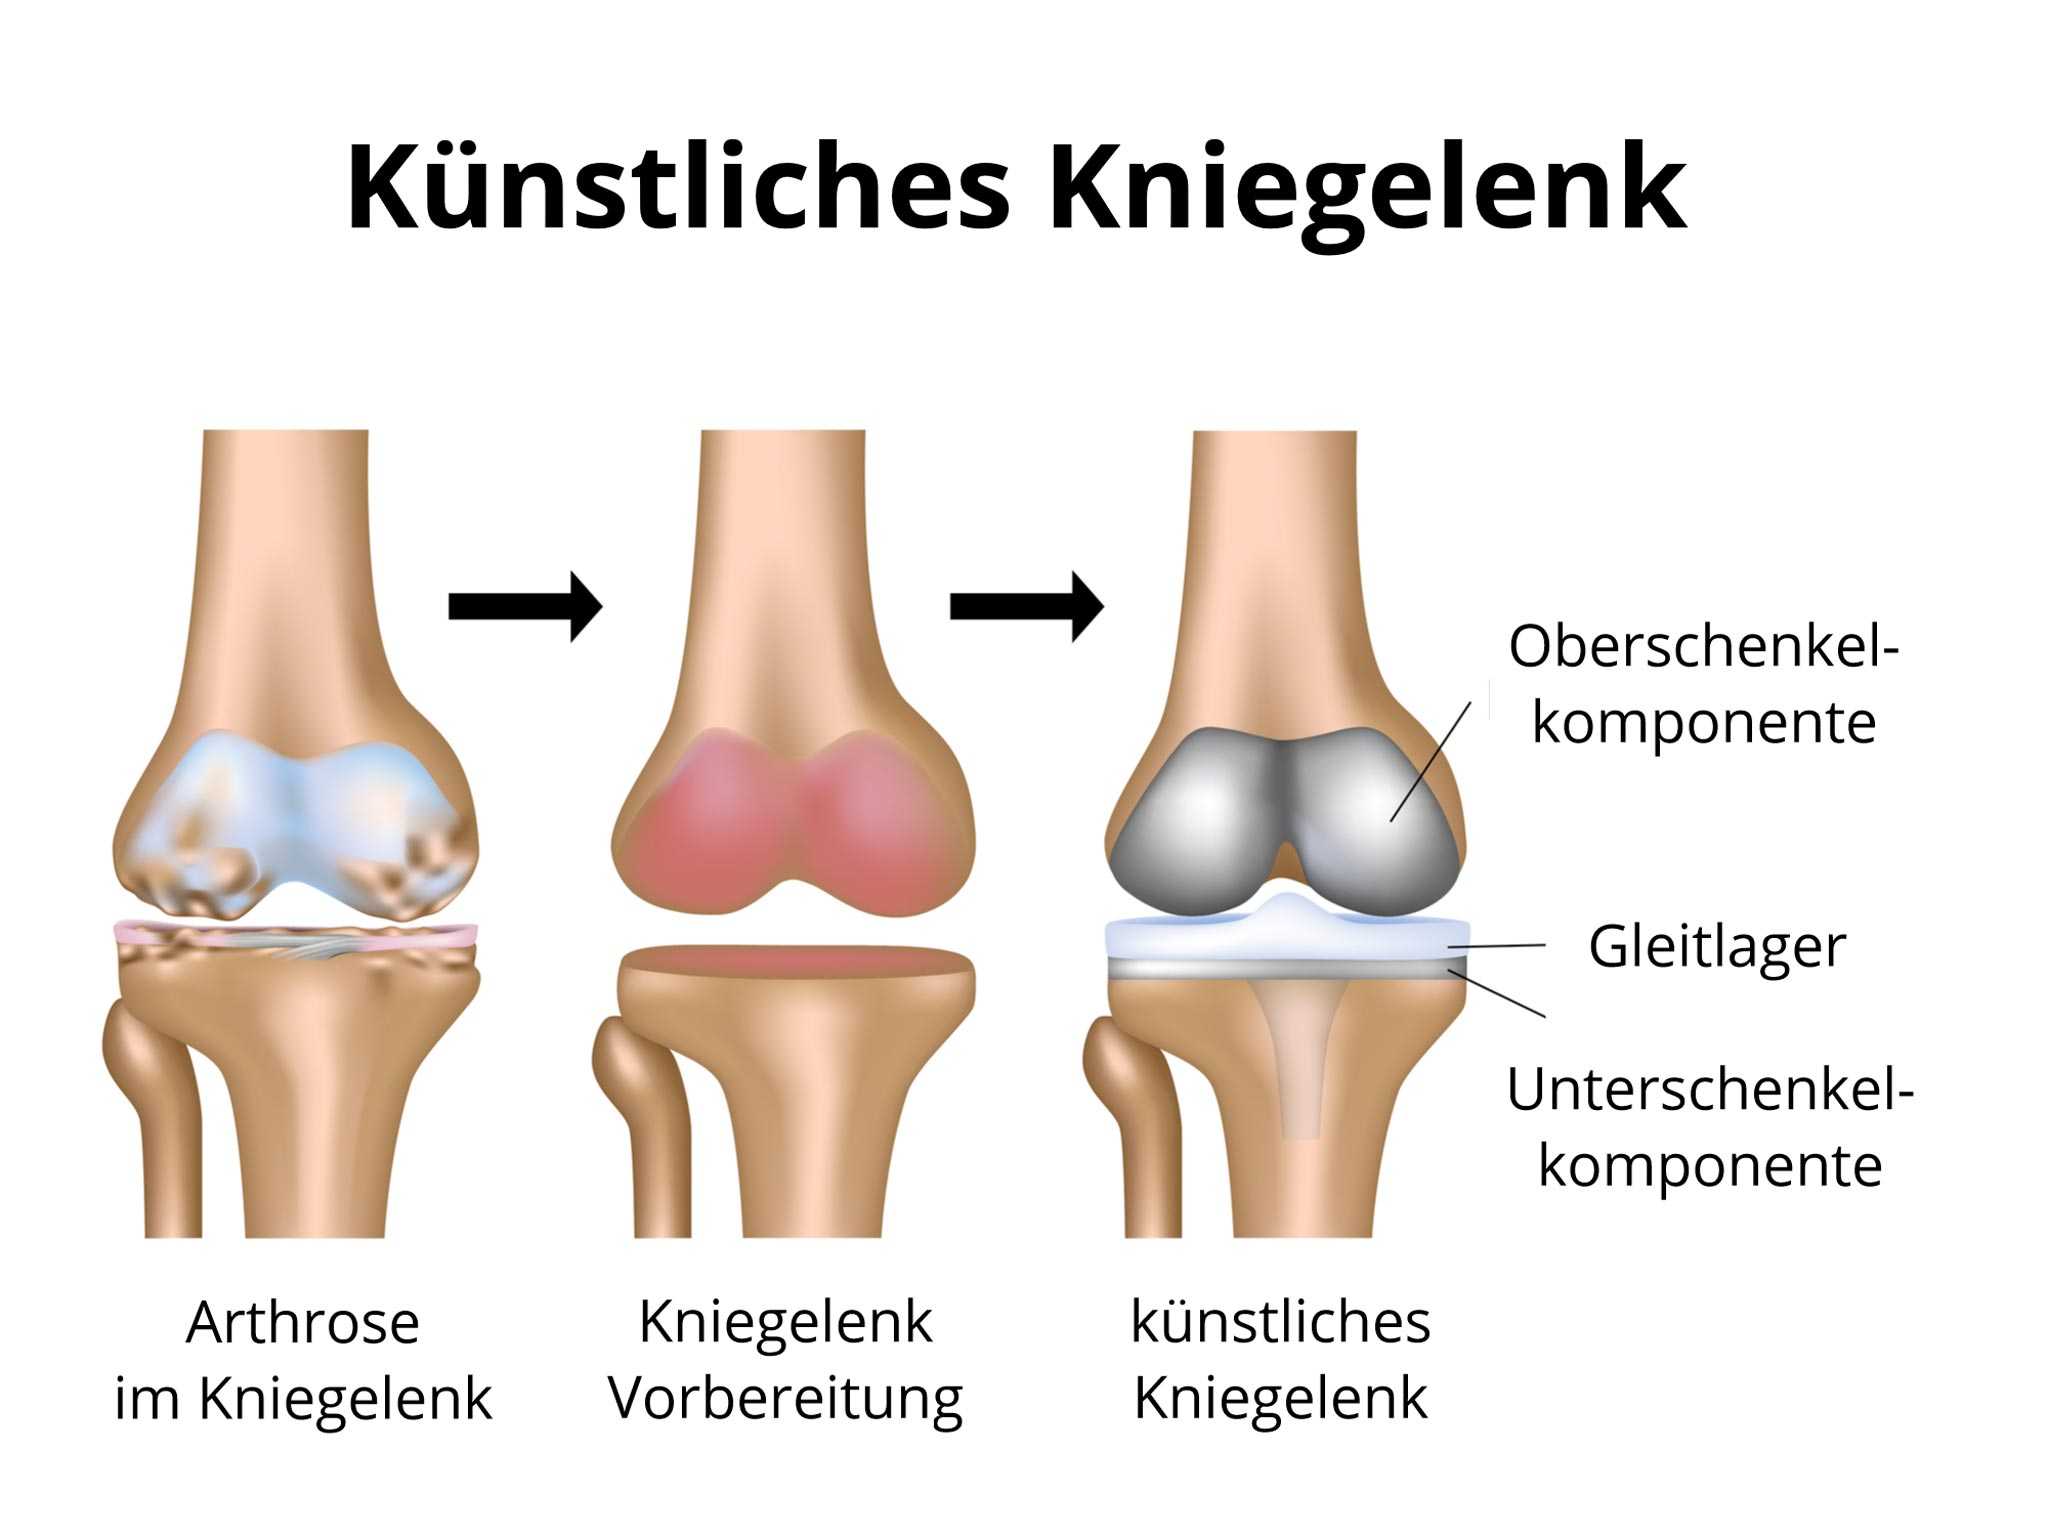 Schlittenprothese knie wie lange krank